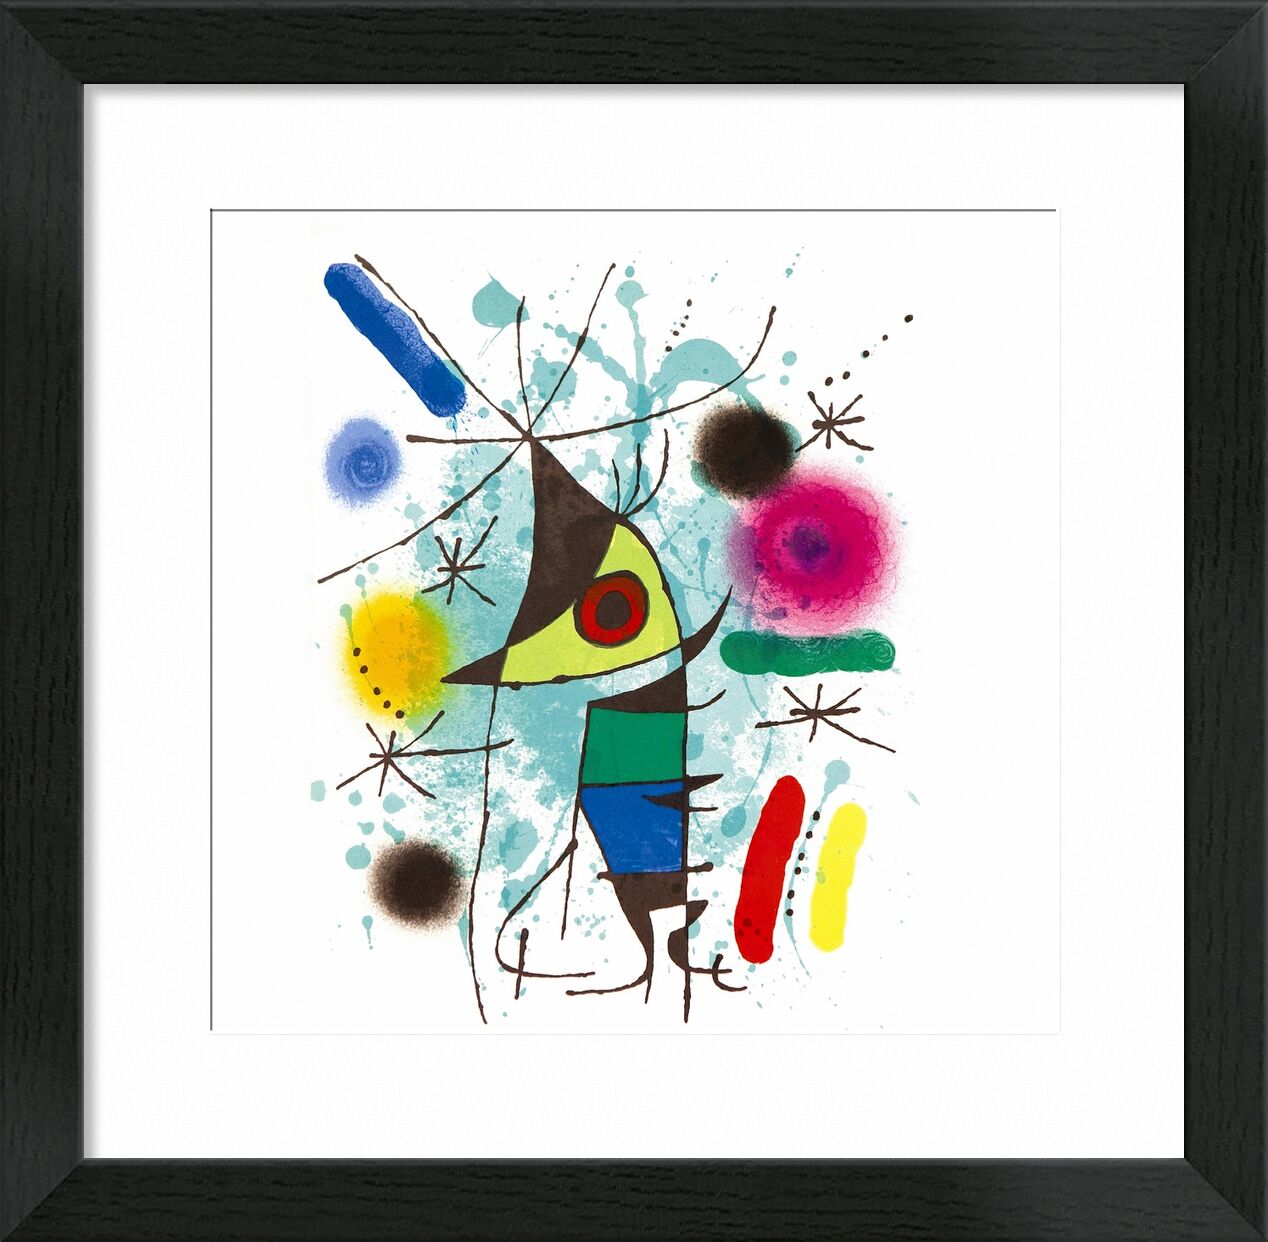 The Singing Fish - Joan Miró von Bildende Kunst, Prodi Art, Singen, Musik-, Fisch, abstrakt, Malerei, Zeichnung, Joan Miró